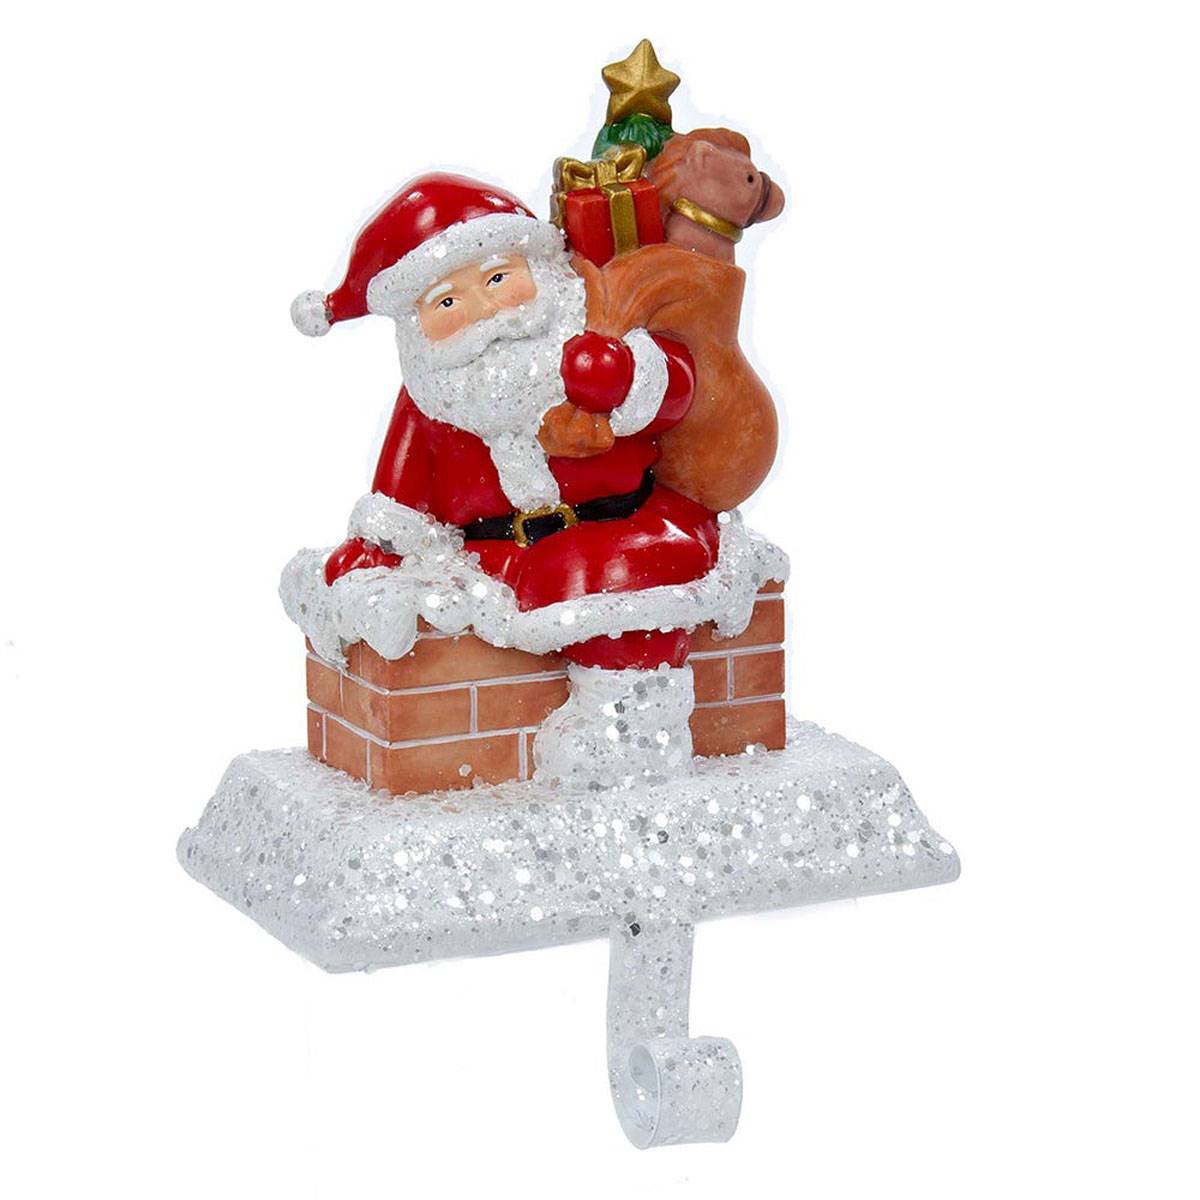 Kurt S. Adler 6.5in. Resin Santa With Gift Box Stocking Holder